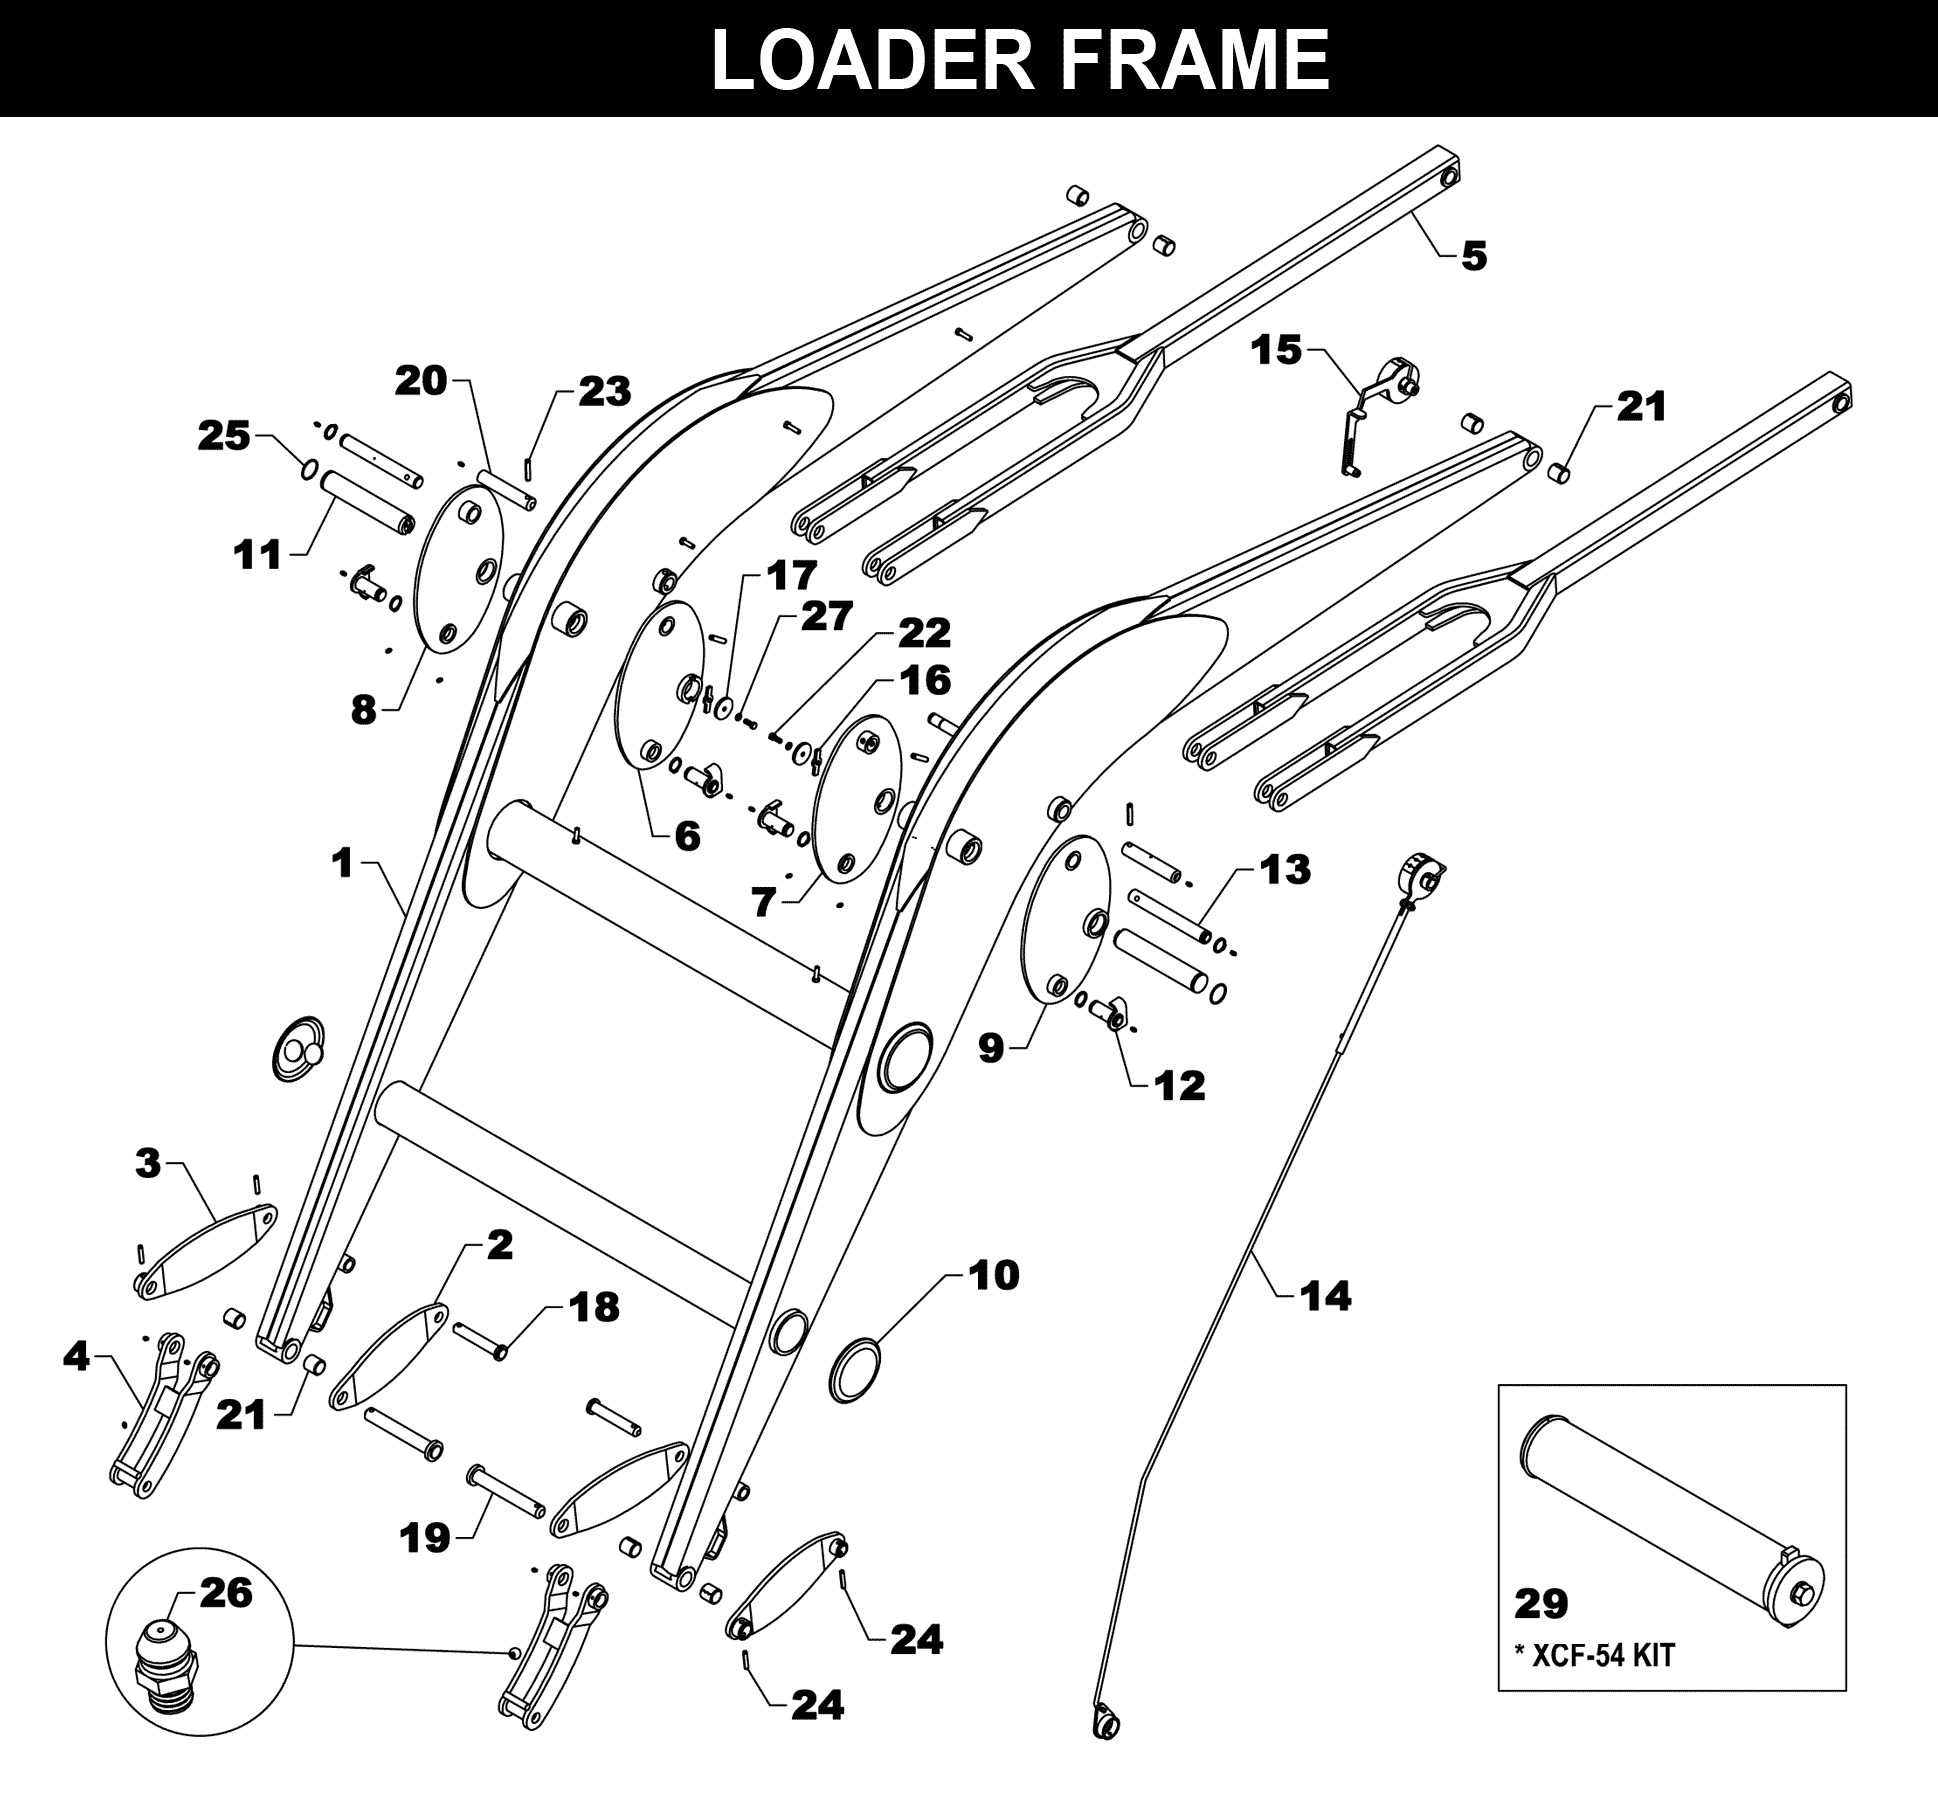 CC-370 Loader Frame